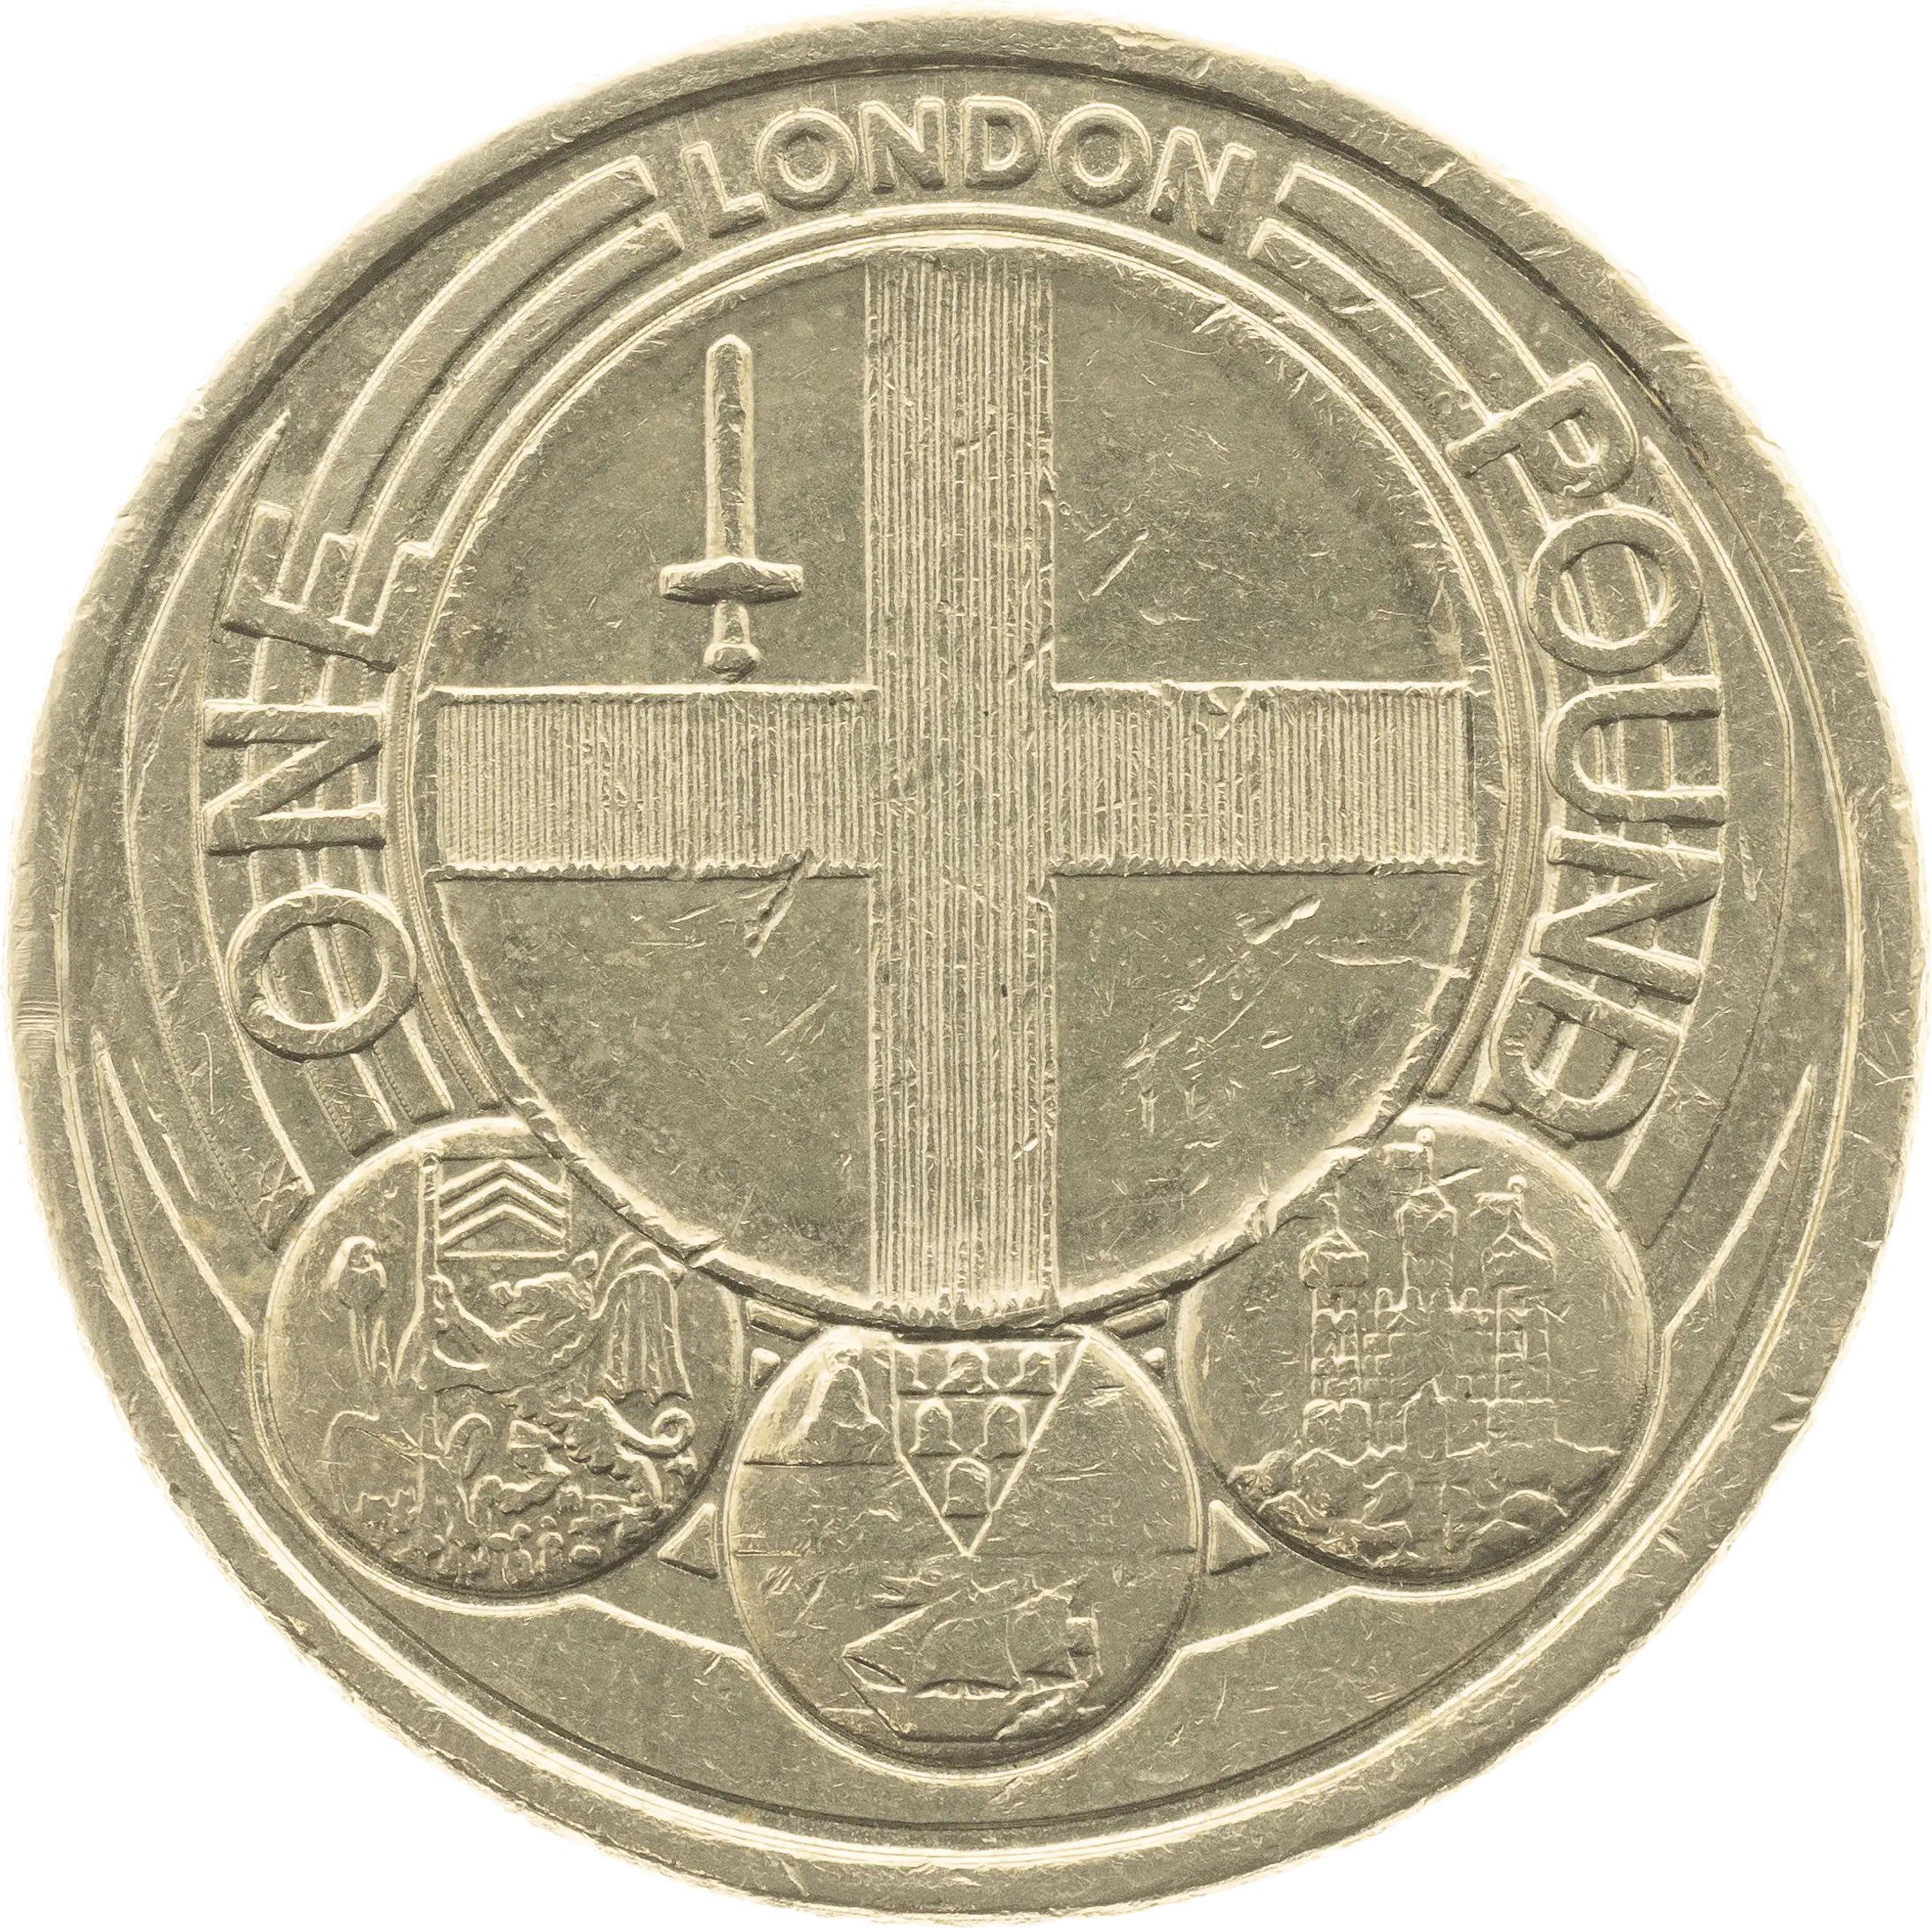 London £1 Coin design